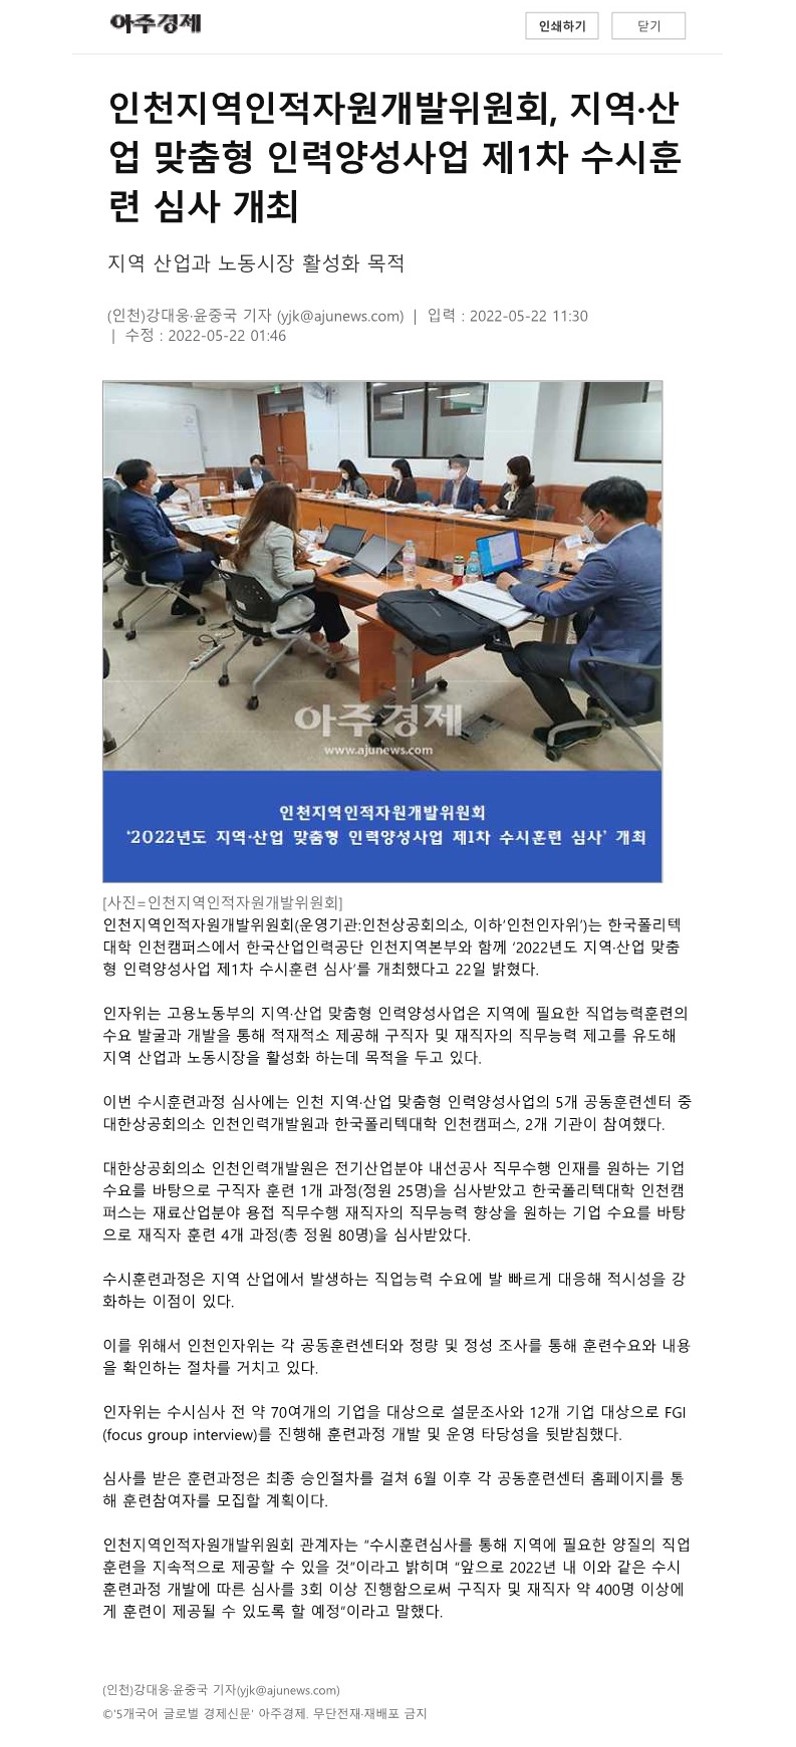 220522_아주경제_인천인자위 지산맞 인력양성사업 1차 수시훈련 심사 개최의 1번째 이미지